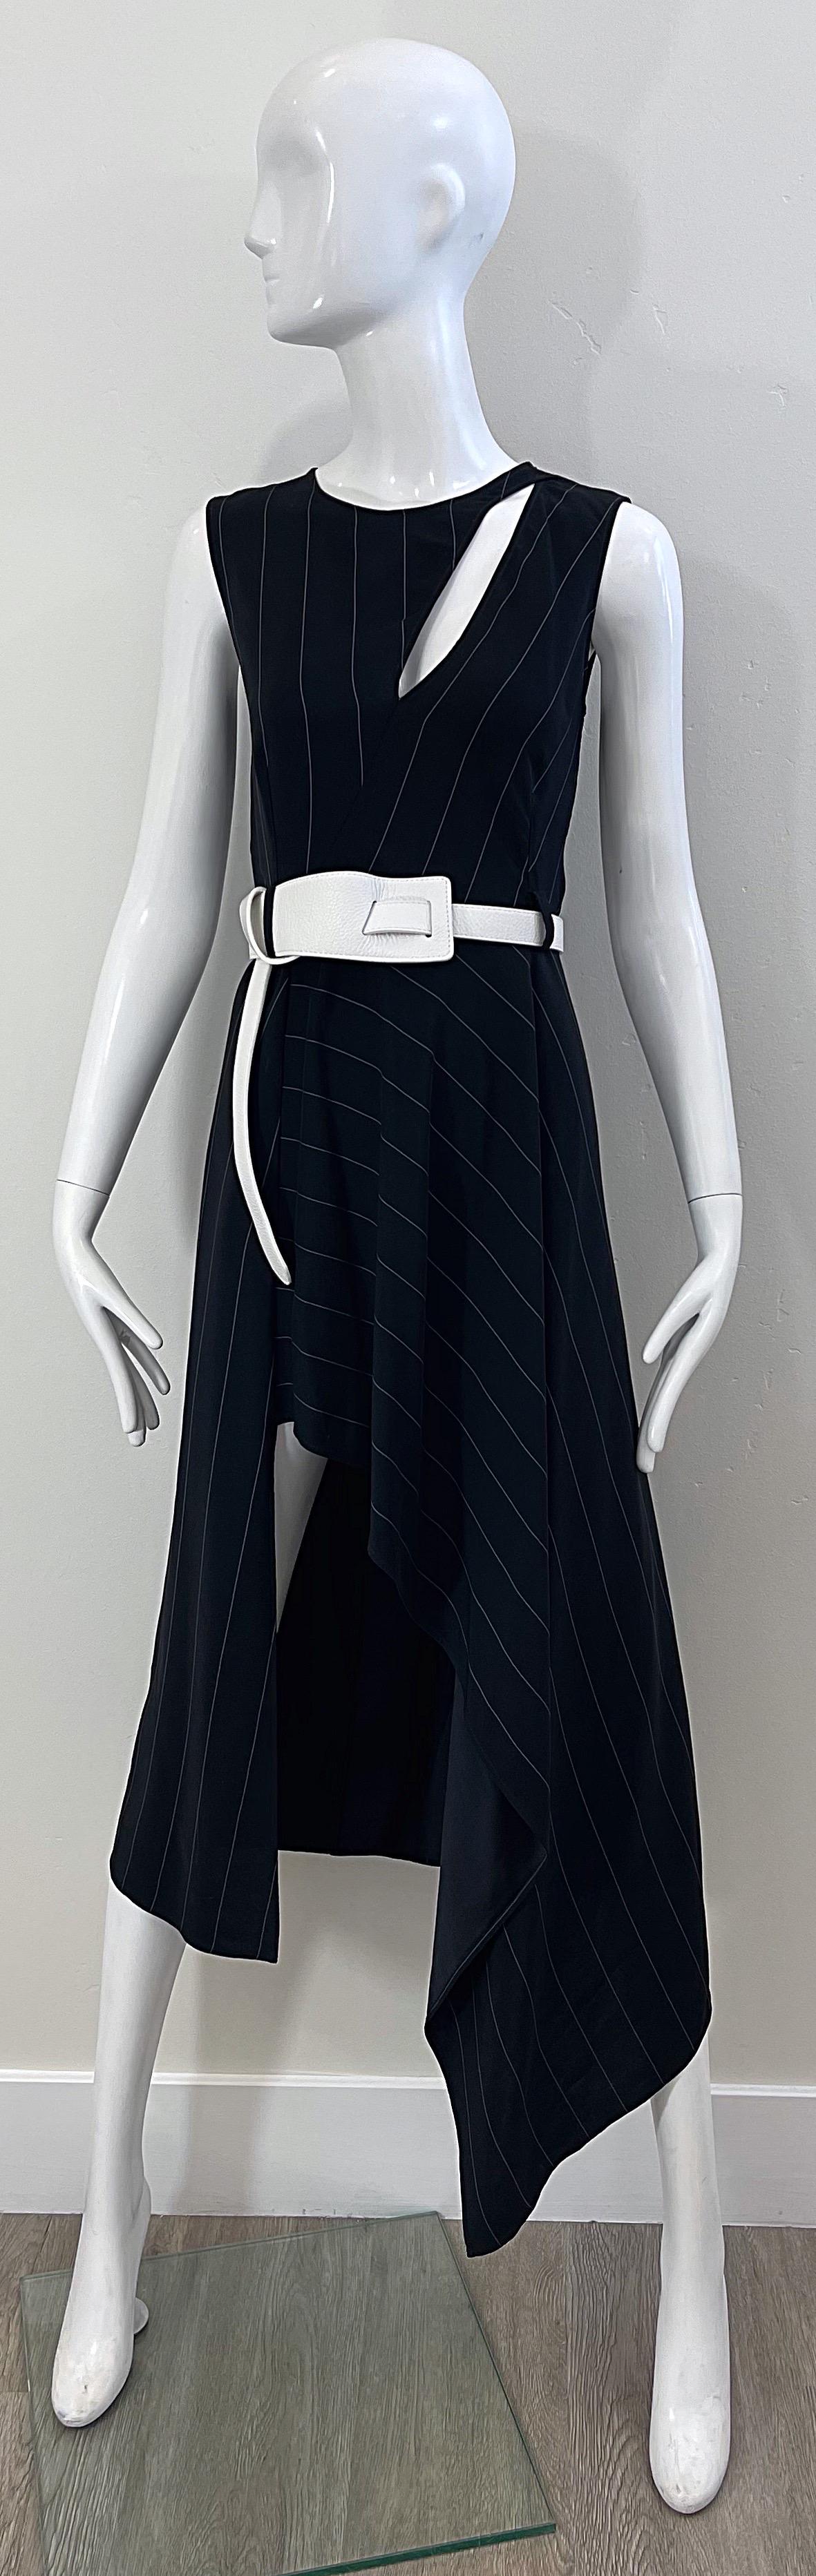 Chic début des années 2000 THIERRY MUGLER robe à rayures noires et blanches avec ceinture en rayonne ! Découpe au-dessus du sein gauche. Fermeture à glissière cachée dans le dos avec fermeture auto-agrippante. La ceinture amovible en cuir blanc peut